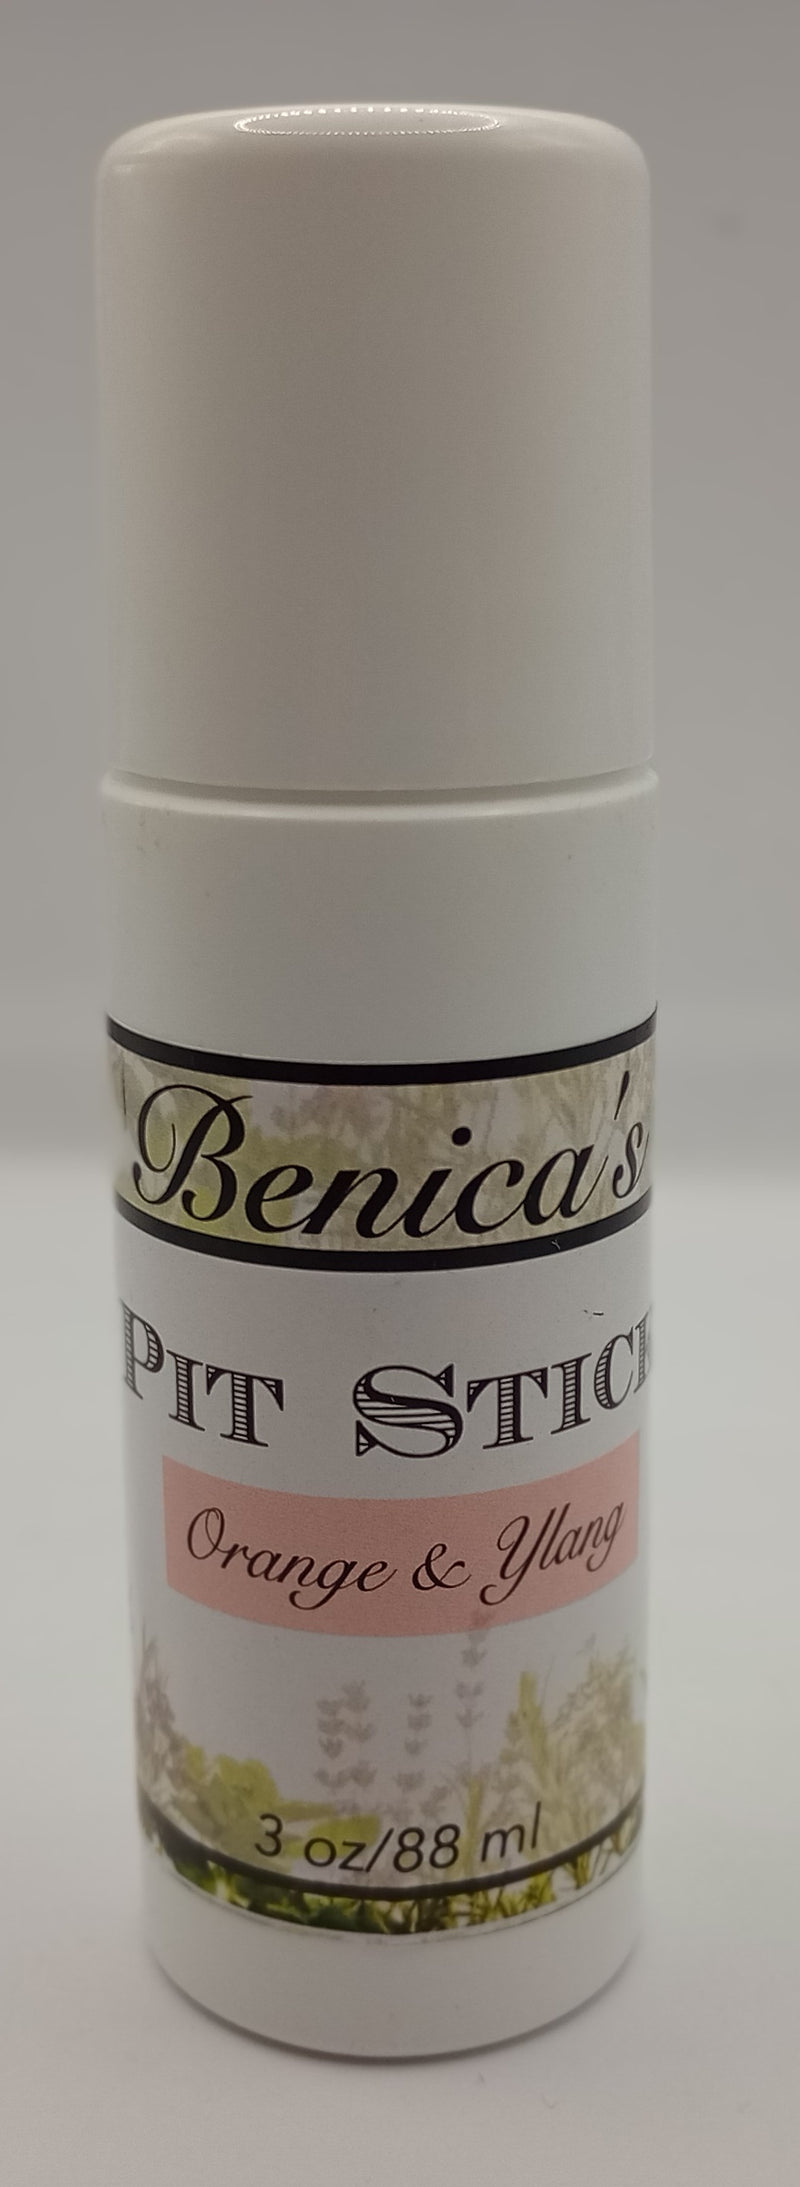 Benica's Pit Stick (Orange & Ylang)